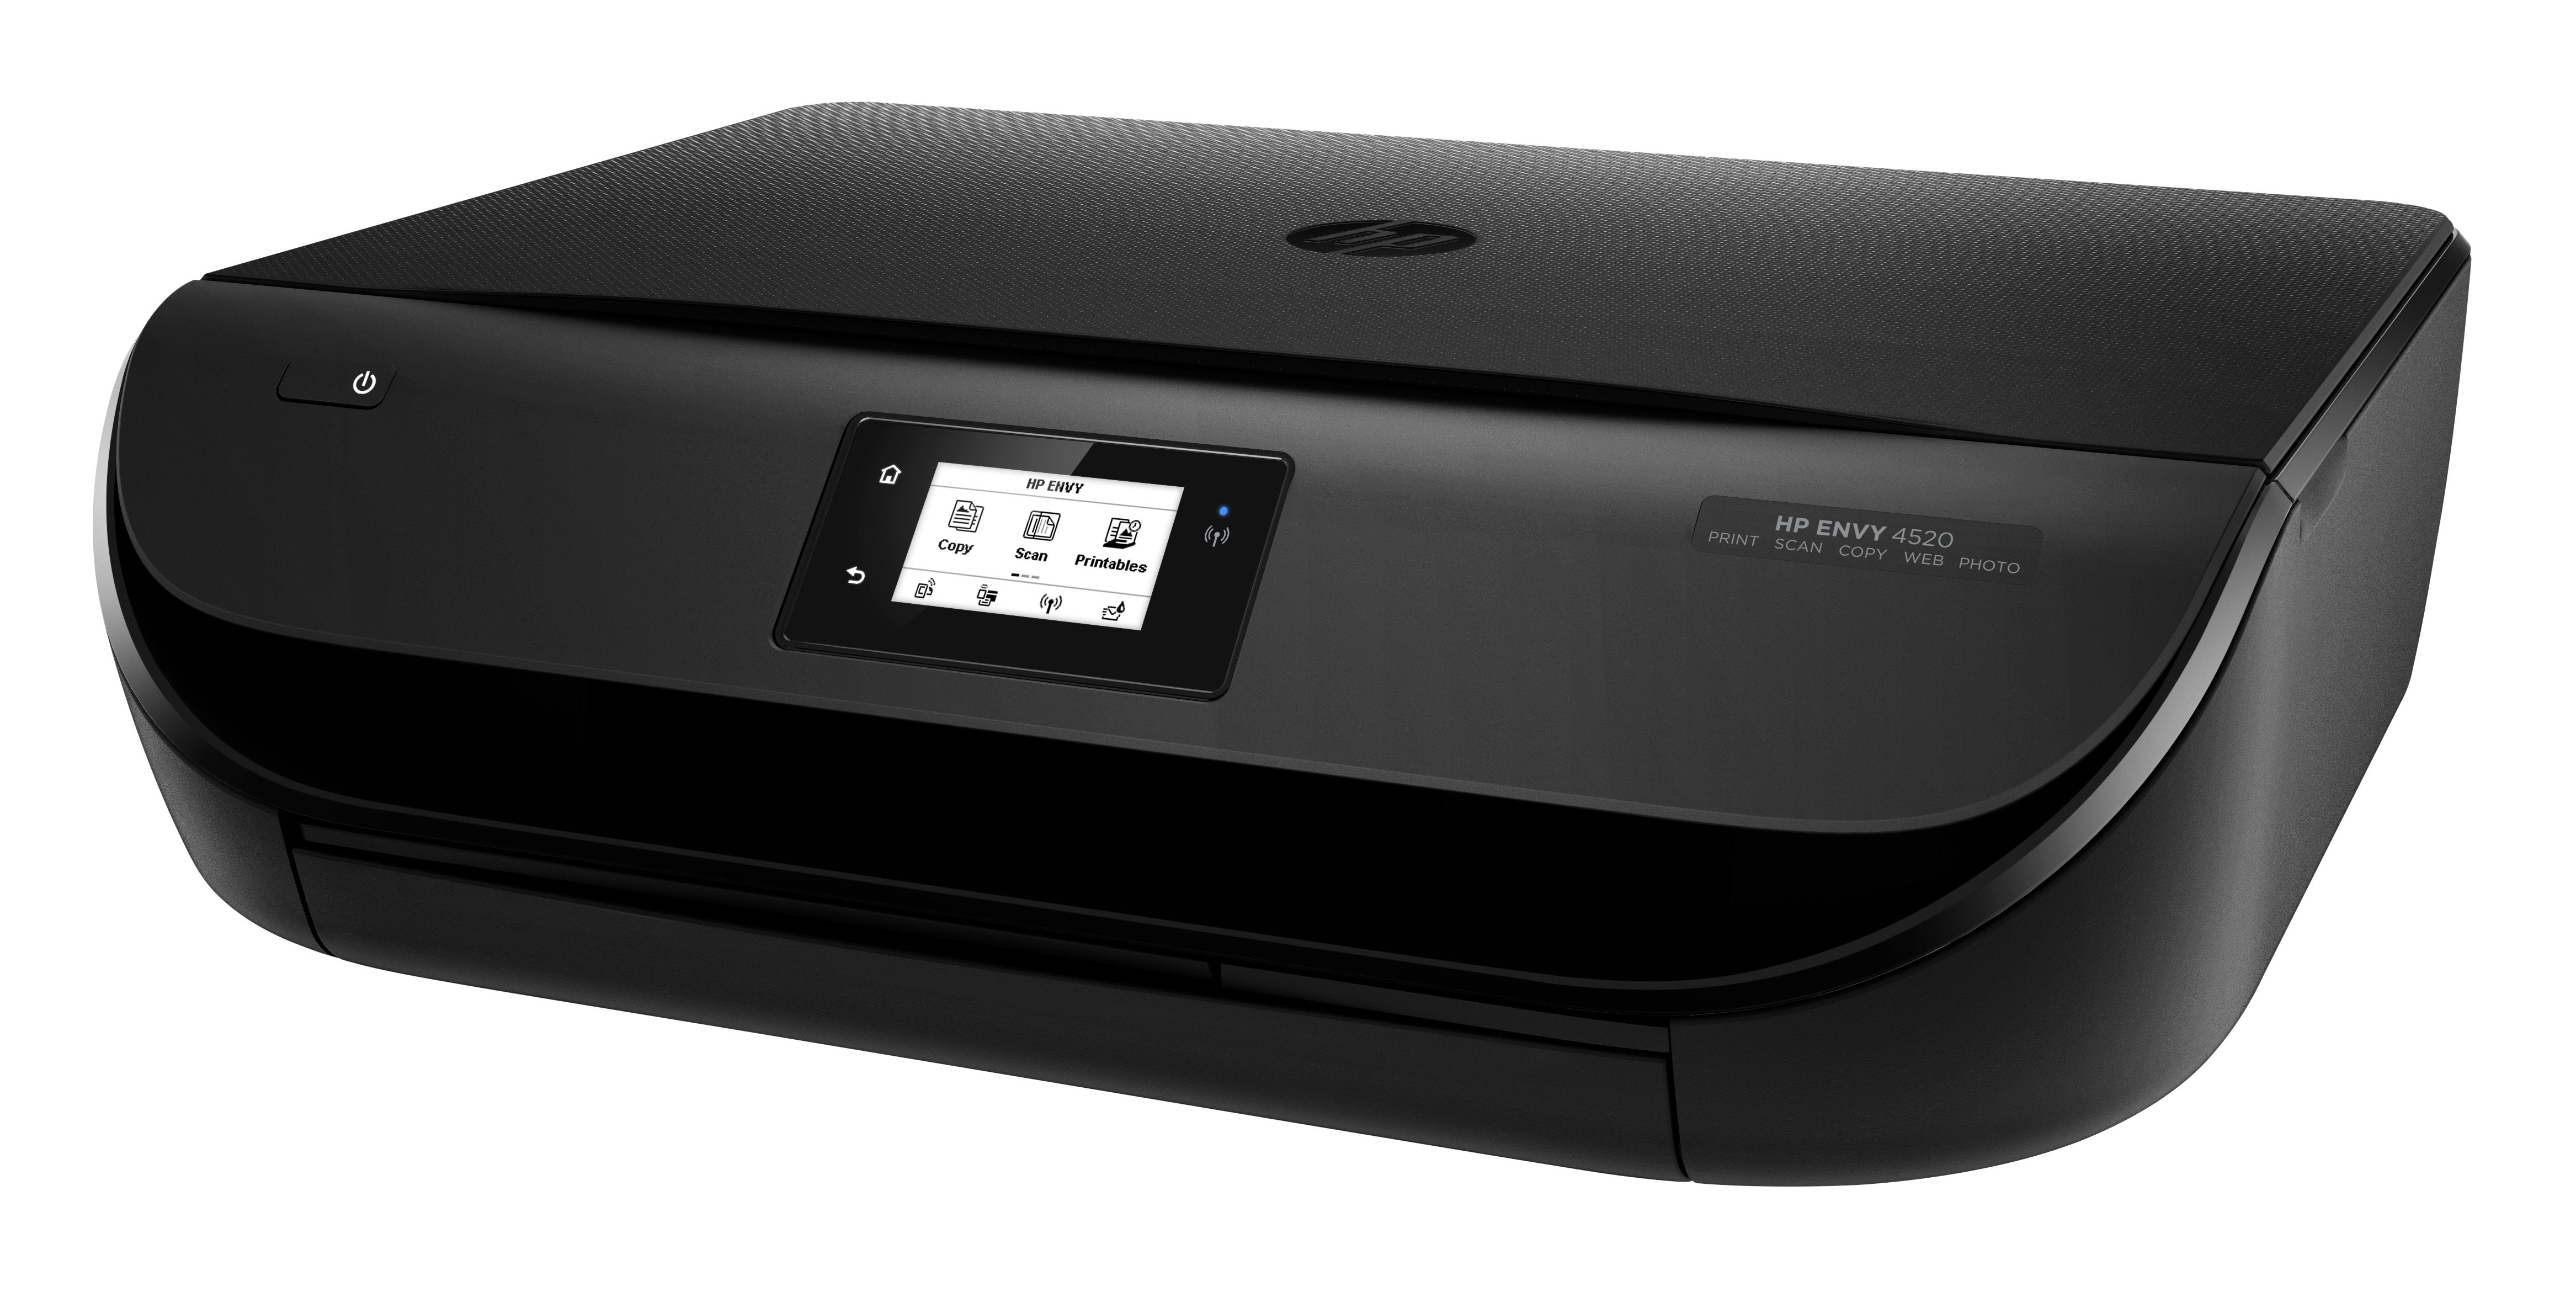 scanner software for hp envy 4520